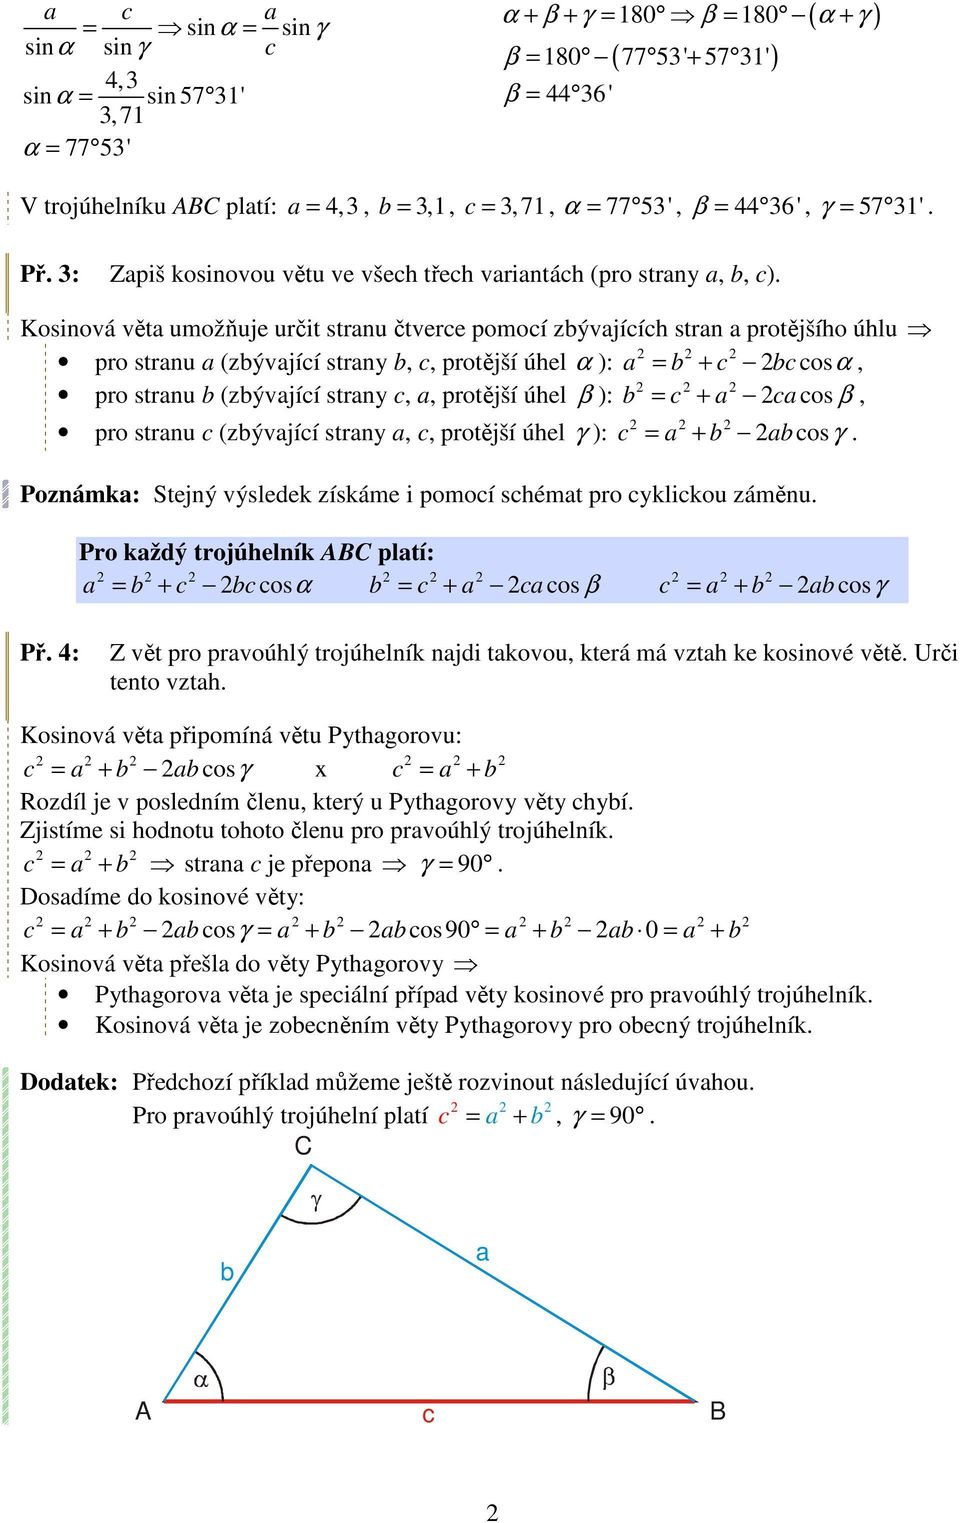 ) = + os β pro strnu (zývjíí strny protější úhel γ ) osγ = + Poznámk Stejný výsledek získáme i pomoí shémt pro yklikou záměnu Pro kždý trojúhelník pltí = + osα = + os β = + osγ Př 4 Z vět pro